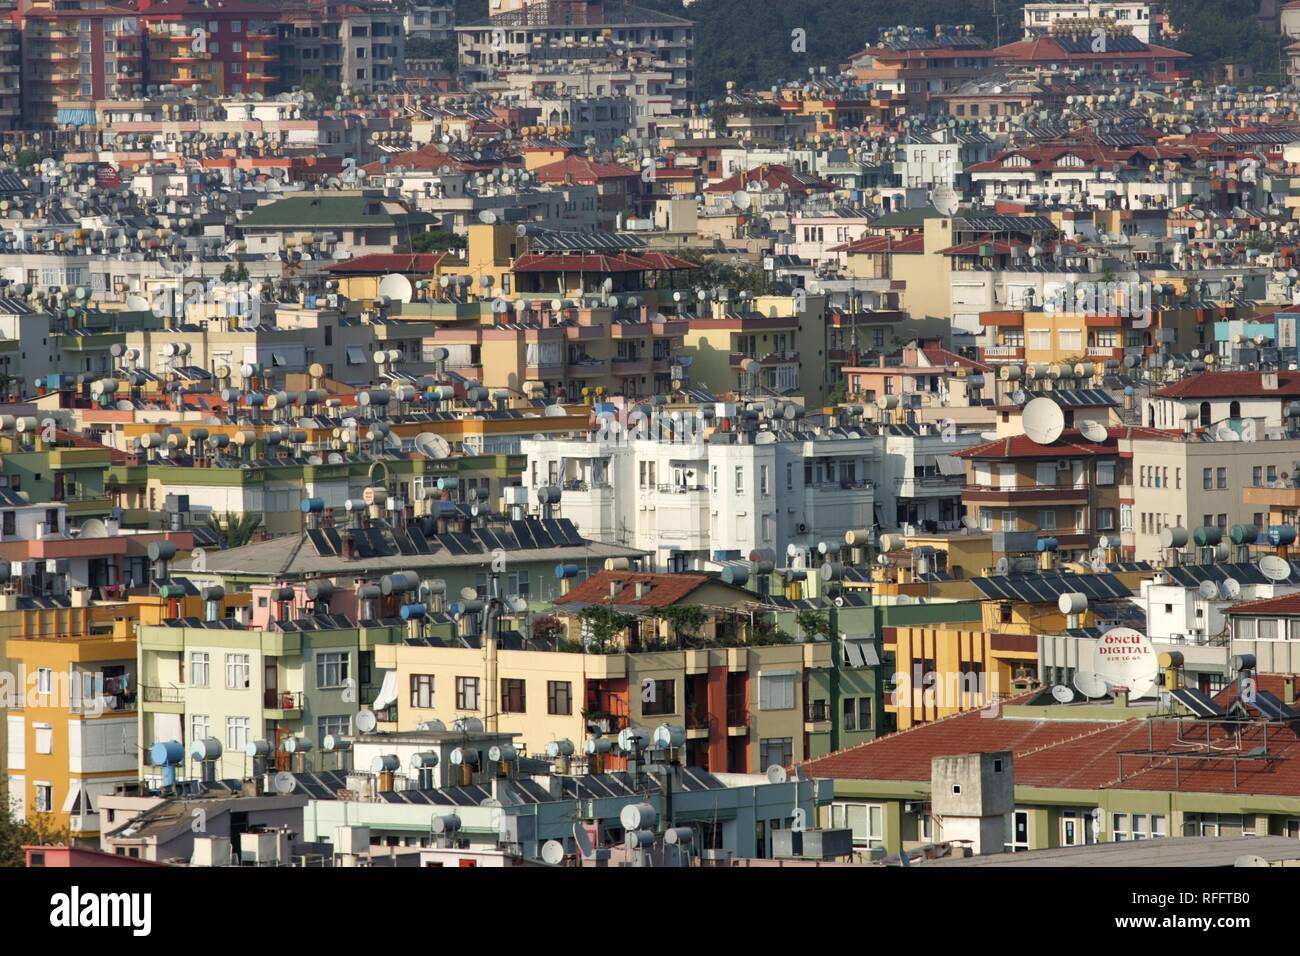 TUR, Turchia Alanya : Riviera Turca. Oceano di case. Watertanks e impianti a energia solare sul tetto uft acqua di riscaldamento. | Foto Stock